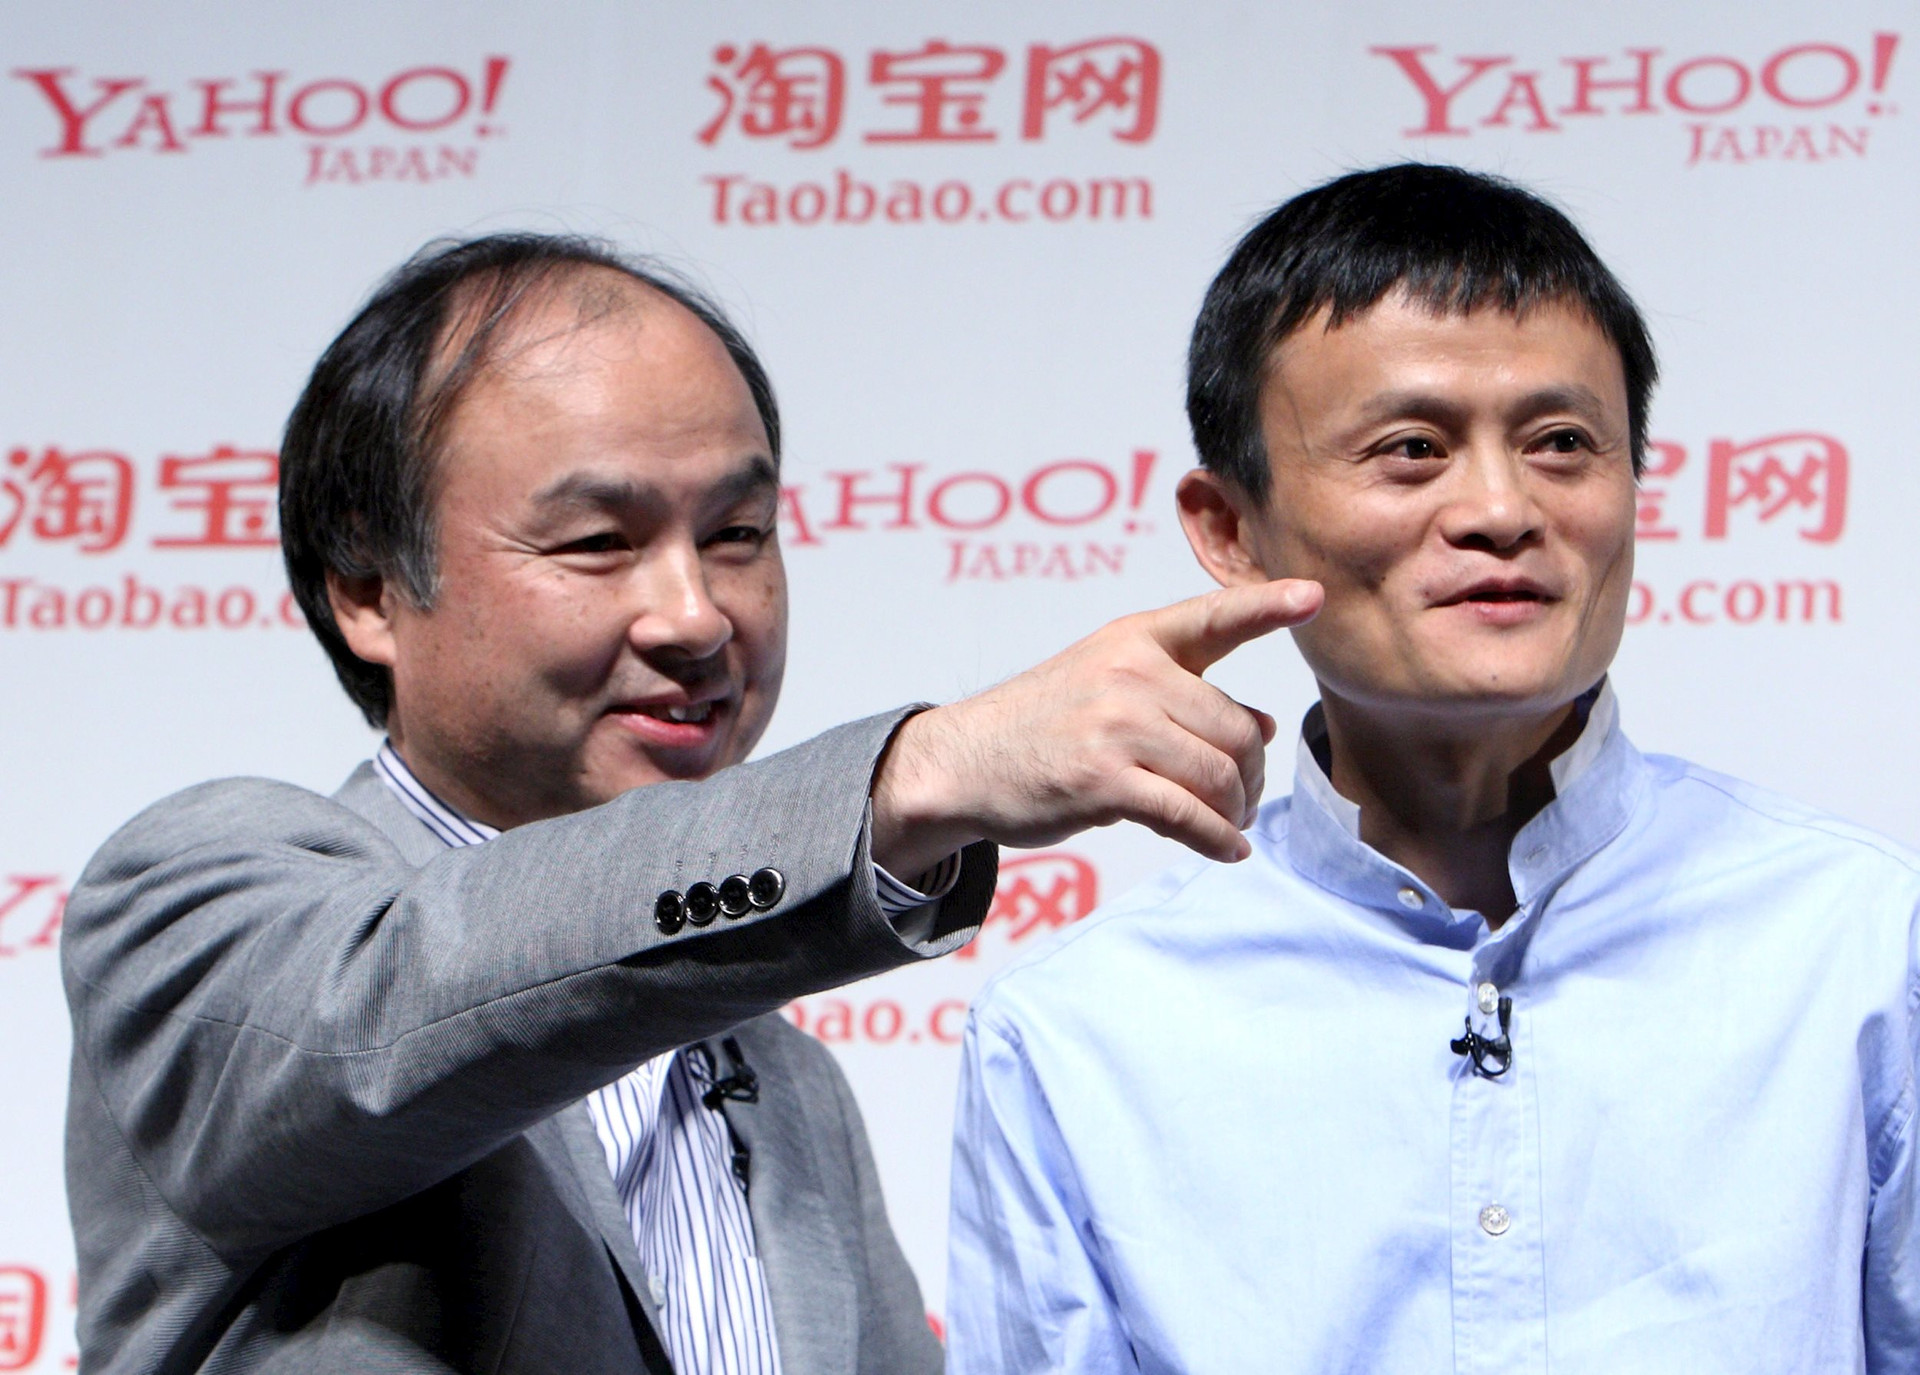 Tạm biệt Alibaba, Masayoshi Son nhắm mục tiêu mới: Phòng thủ hơn 1 năm mới rót vốn, tự tin sắp đón 'cuộc cách mạng tiếp theo'